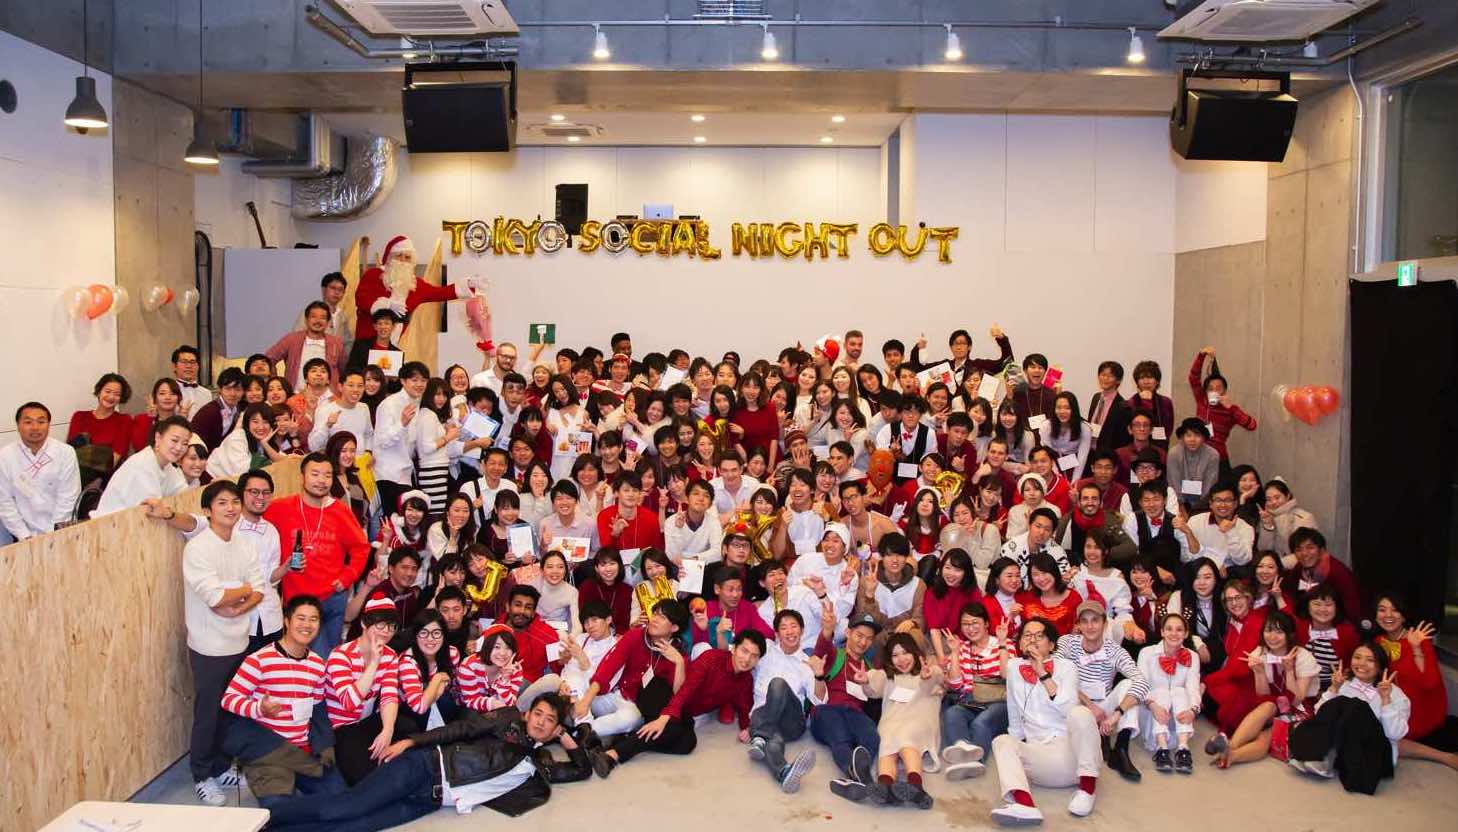 カムバック青春! 大人の文化祭!　TOKYO SOCIAL NIGHT OUT 2018を 開催しました！